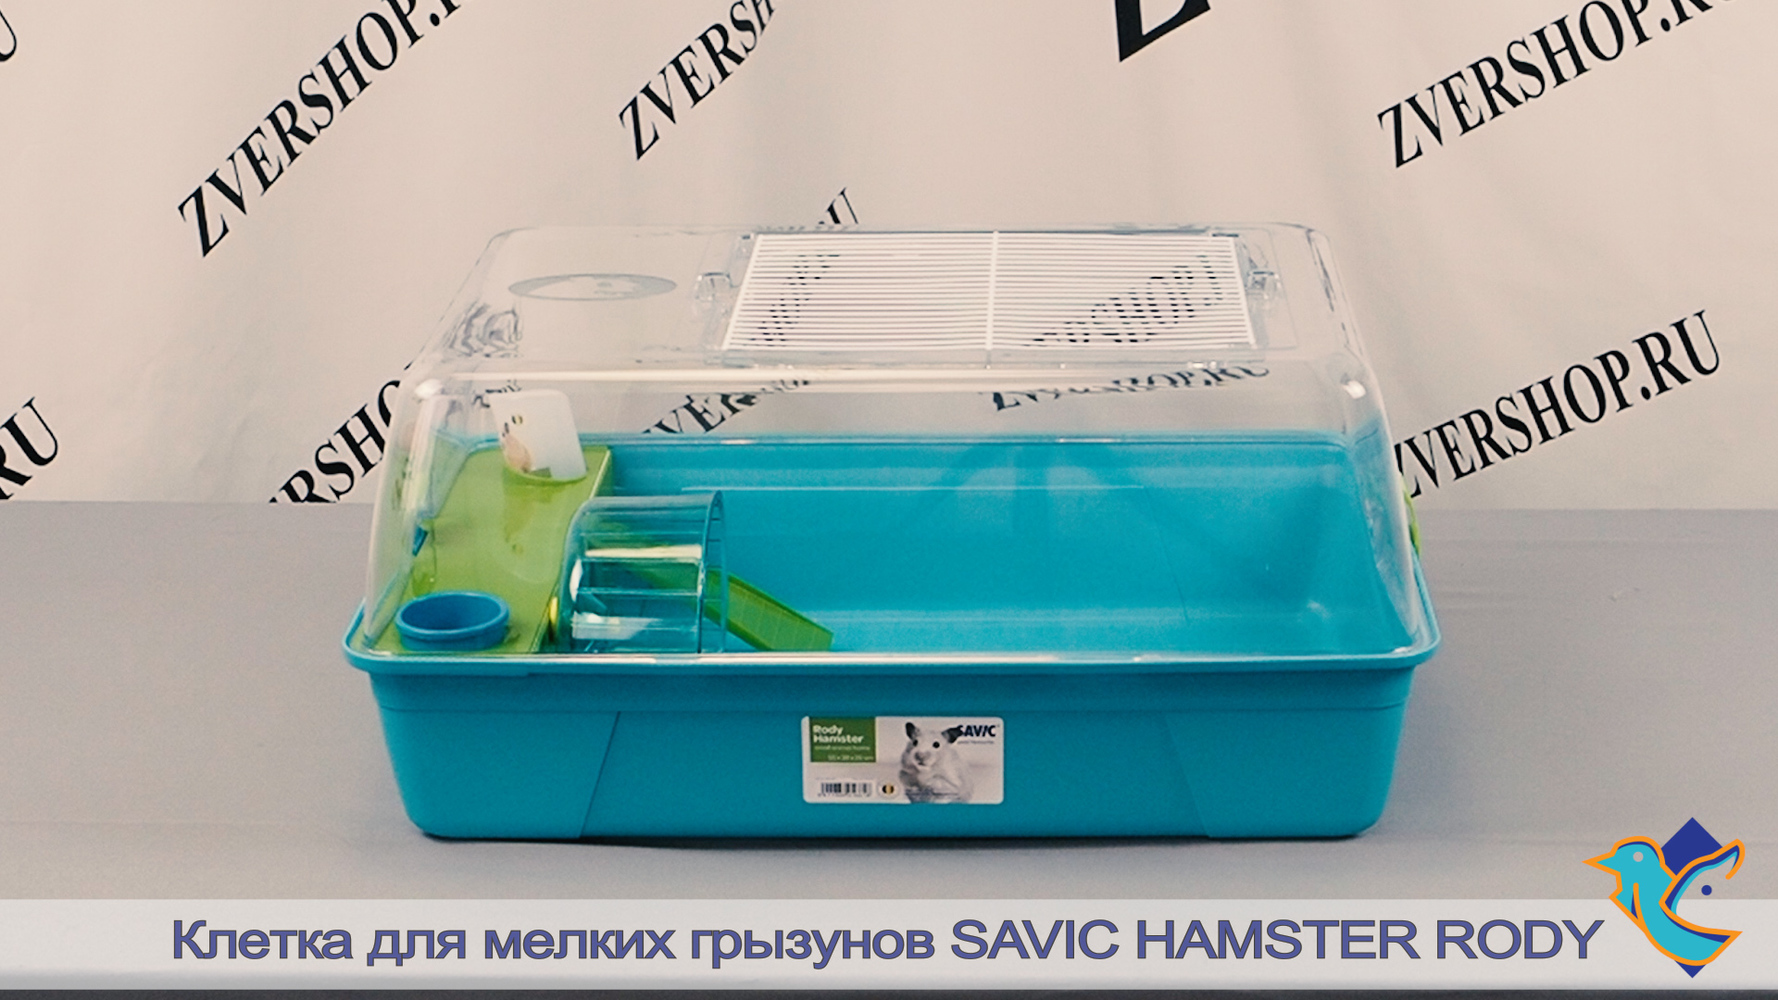 Фото Клетка Hamster Rody для мелких грызунов от Savic 55*39*26 см